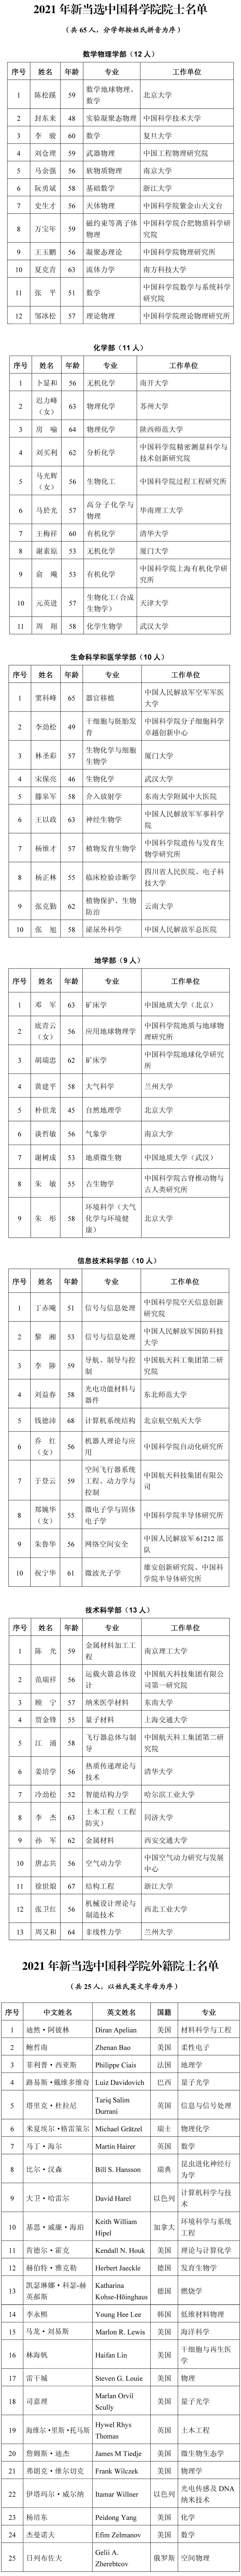 中国科学院2021年院士增选名单揭晓 最小年龄45岁